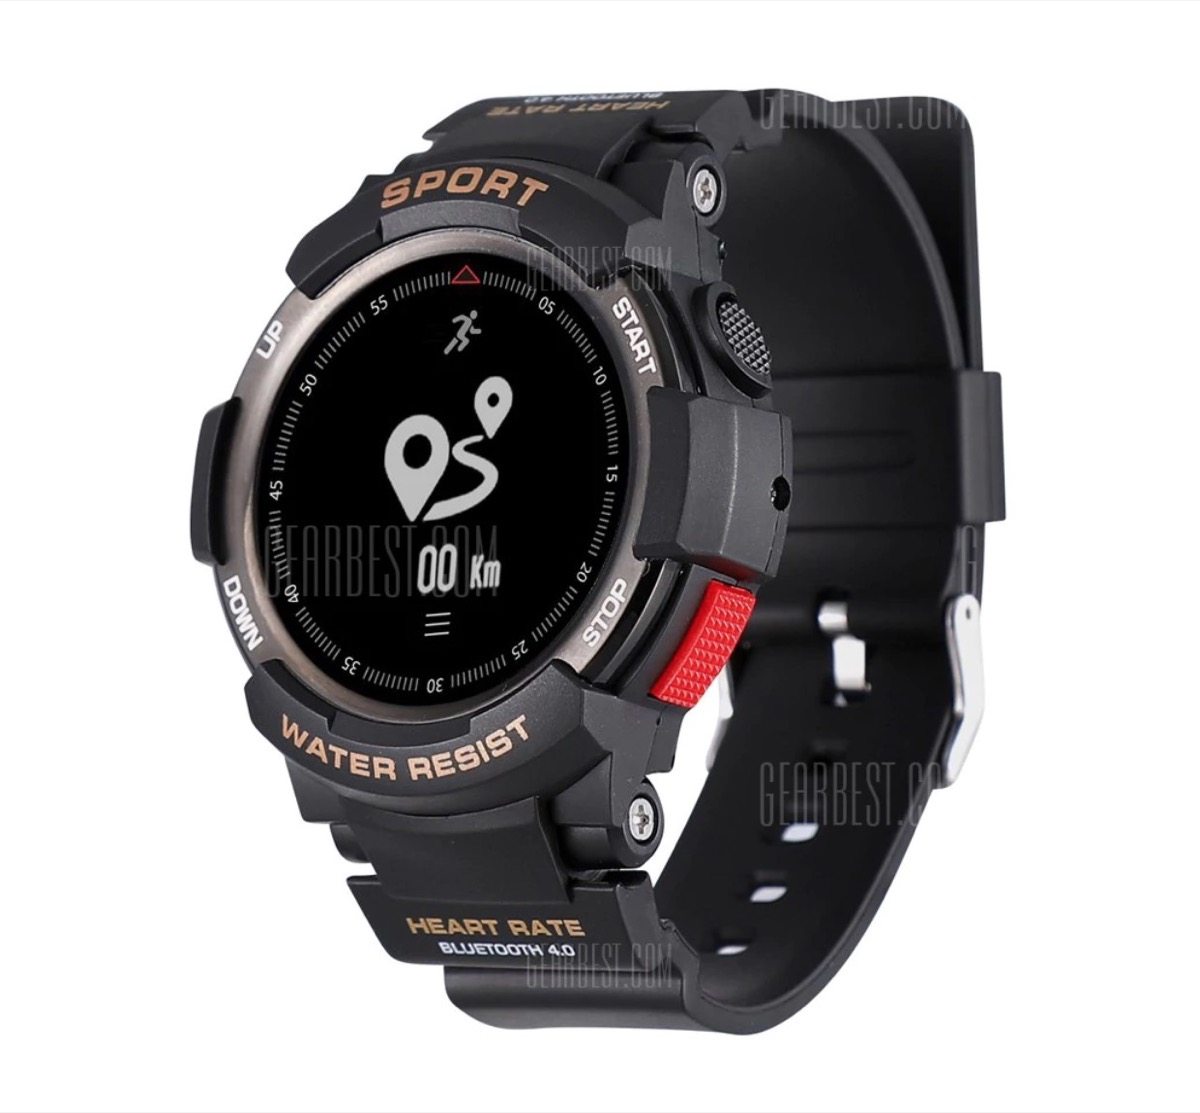 Smartwatch con GPS e 2 mesi di autonomia in offerta lampo a 23,32 euro 